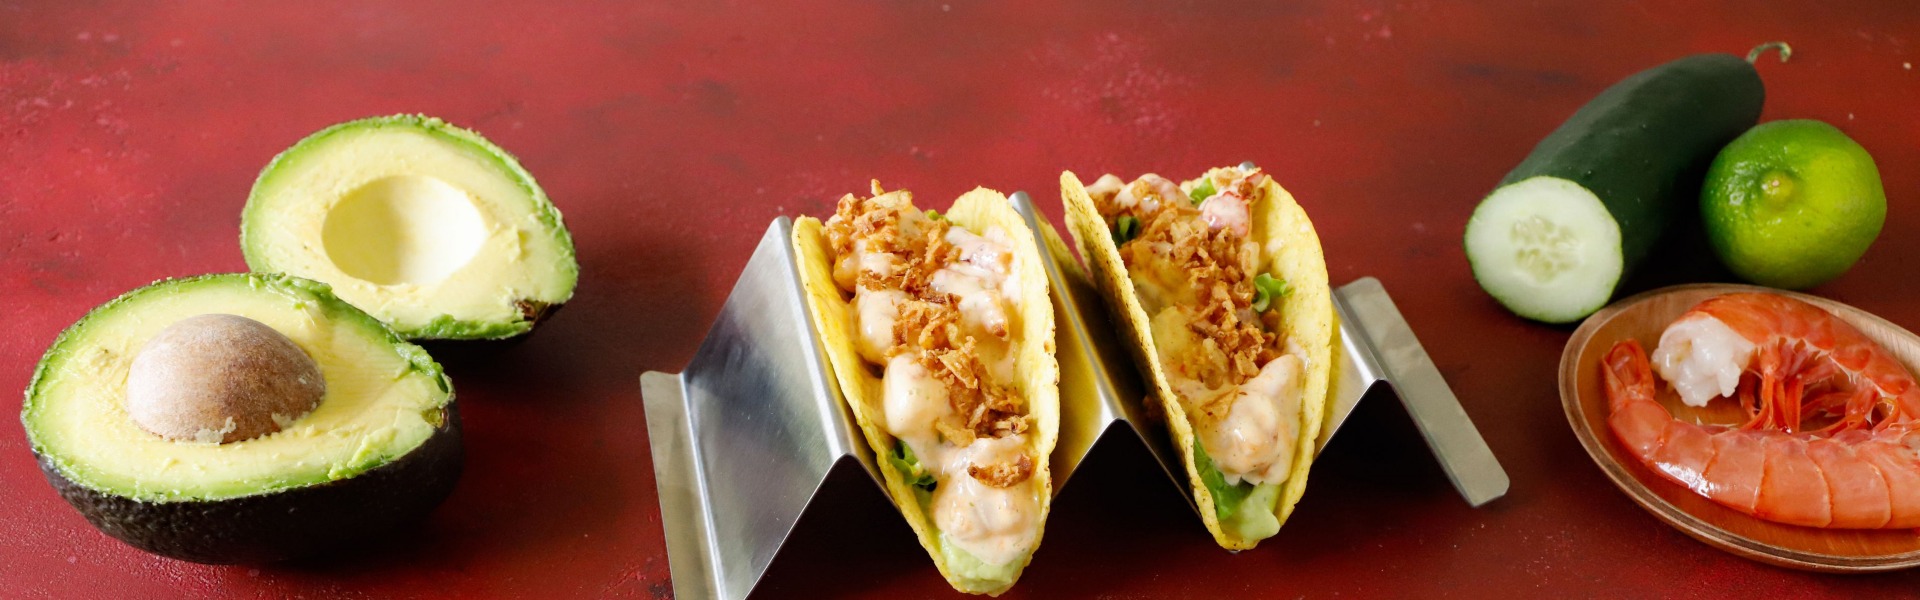 Tacos messicani con gamberi – Belli e Buoni